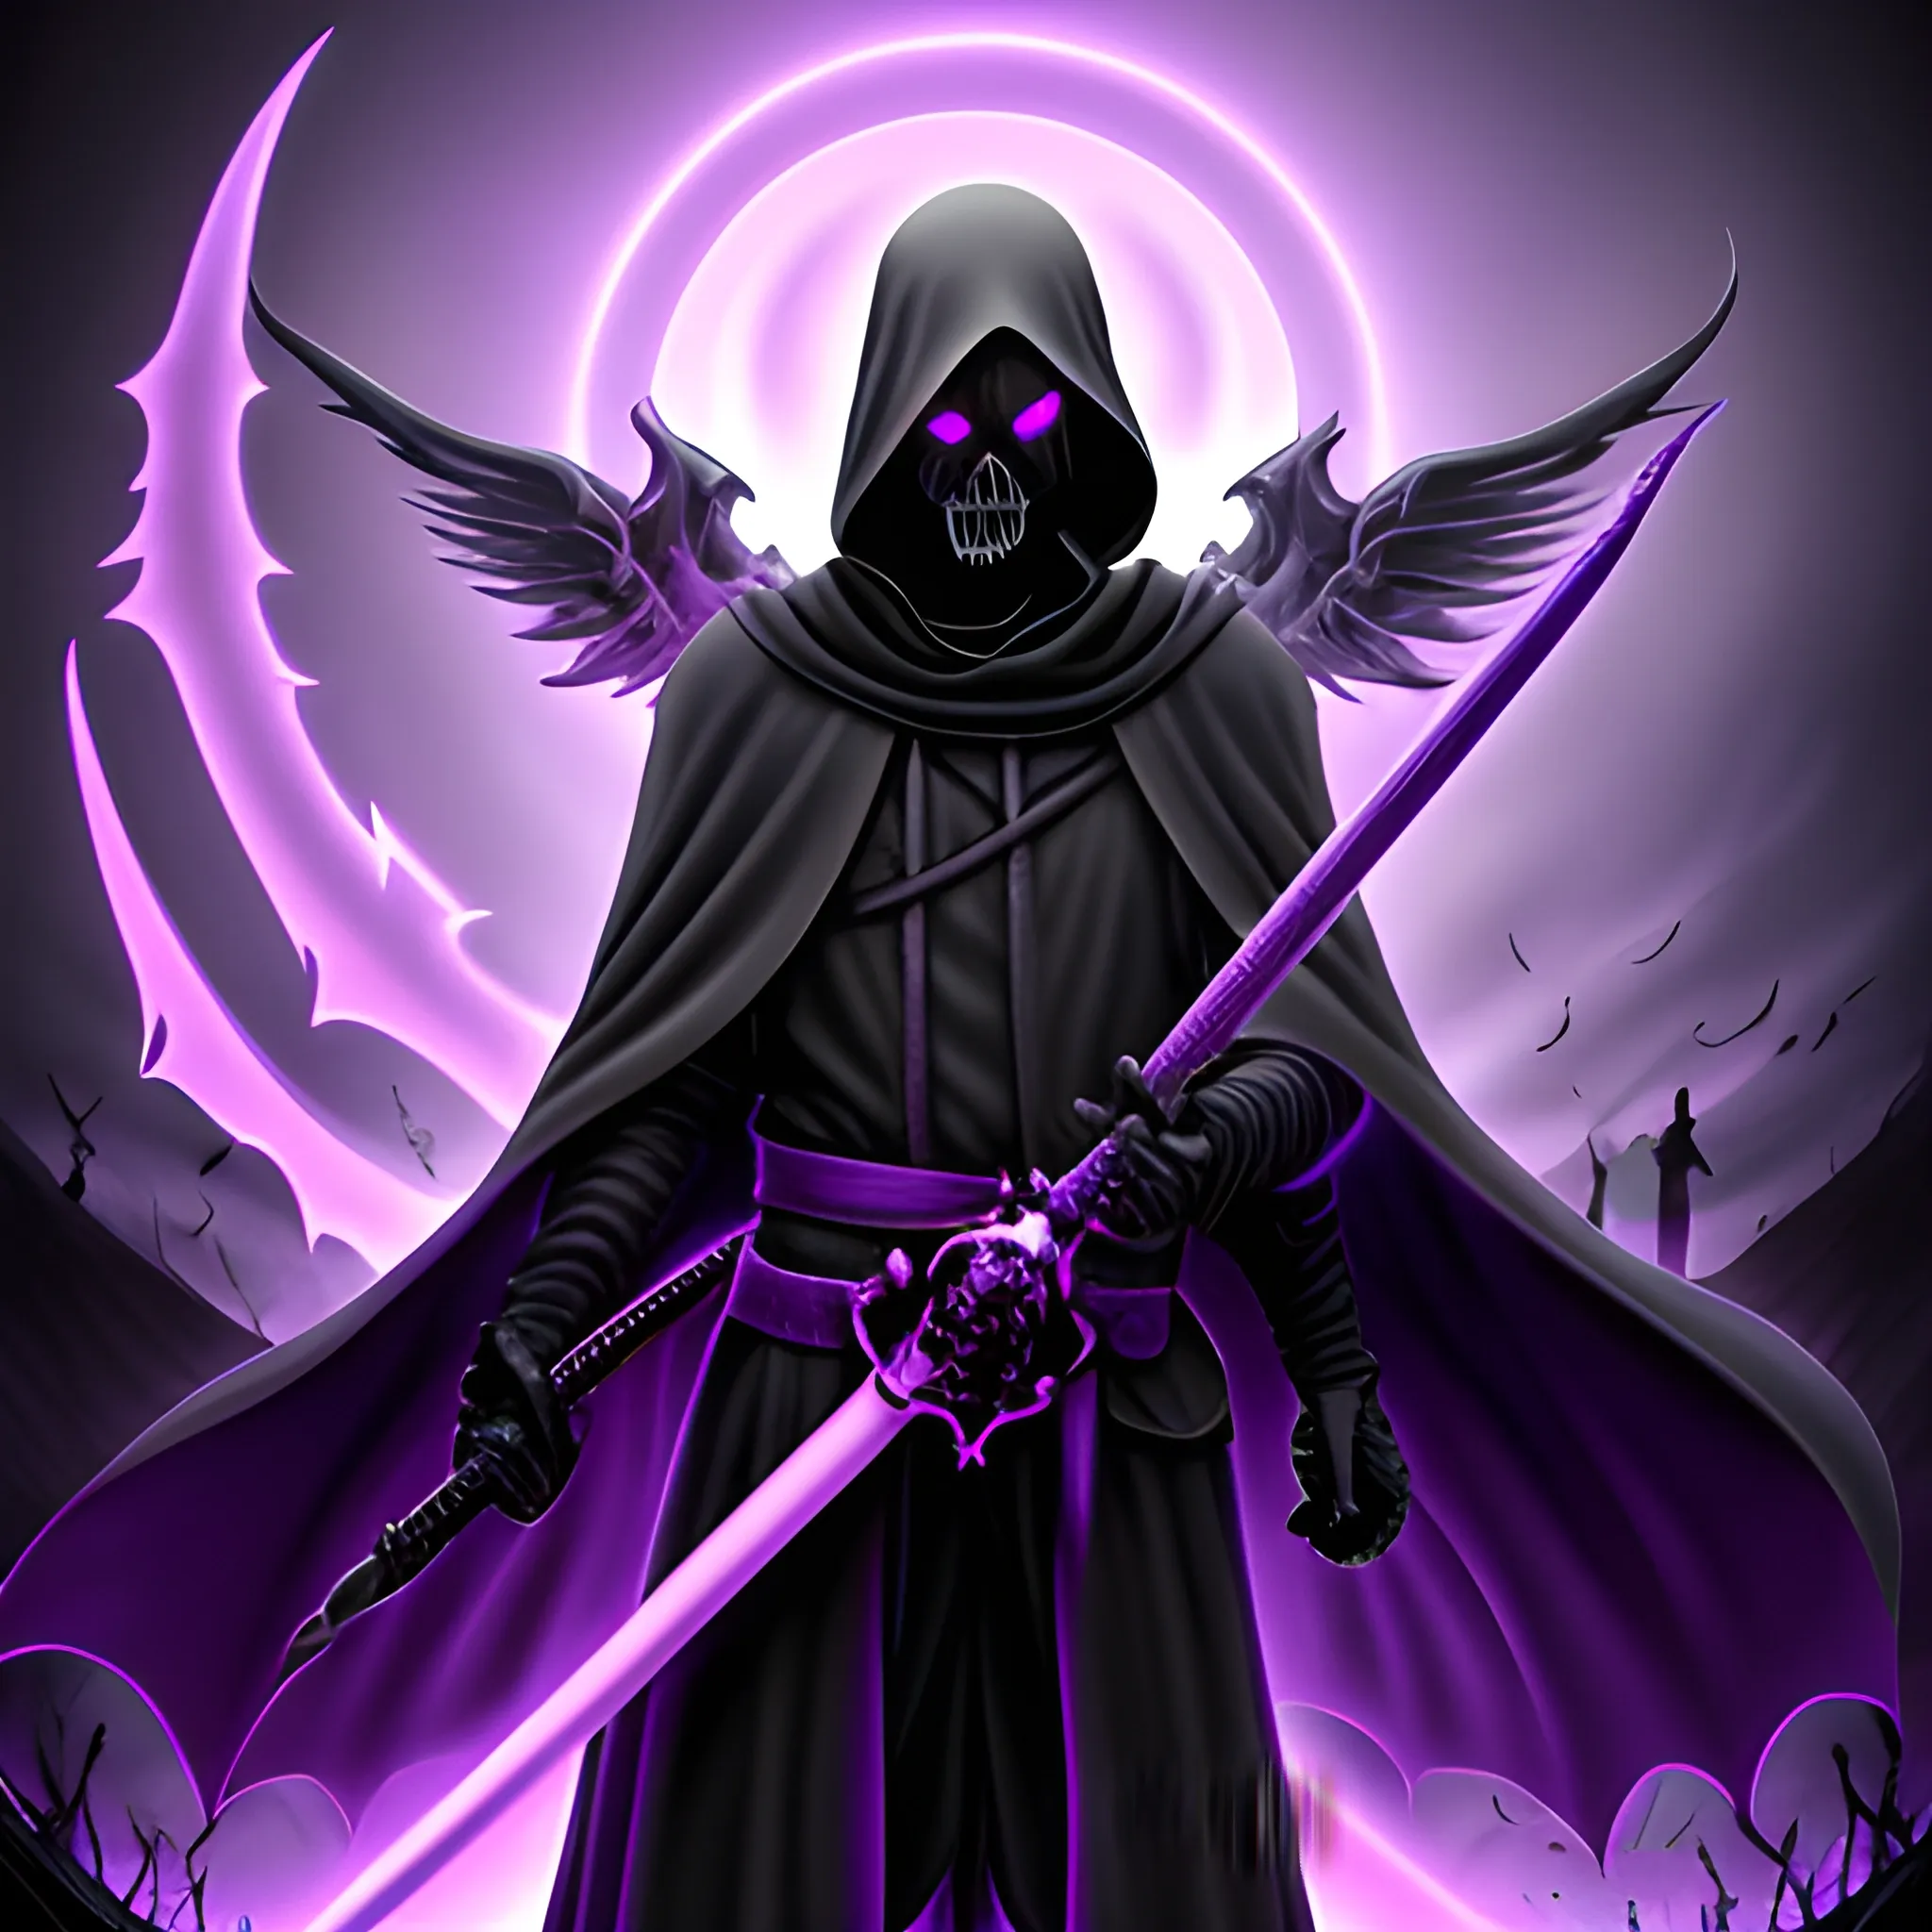 Grim reaper, purple glowing eyes, deathly sword,